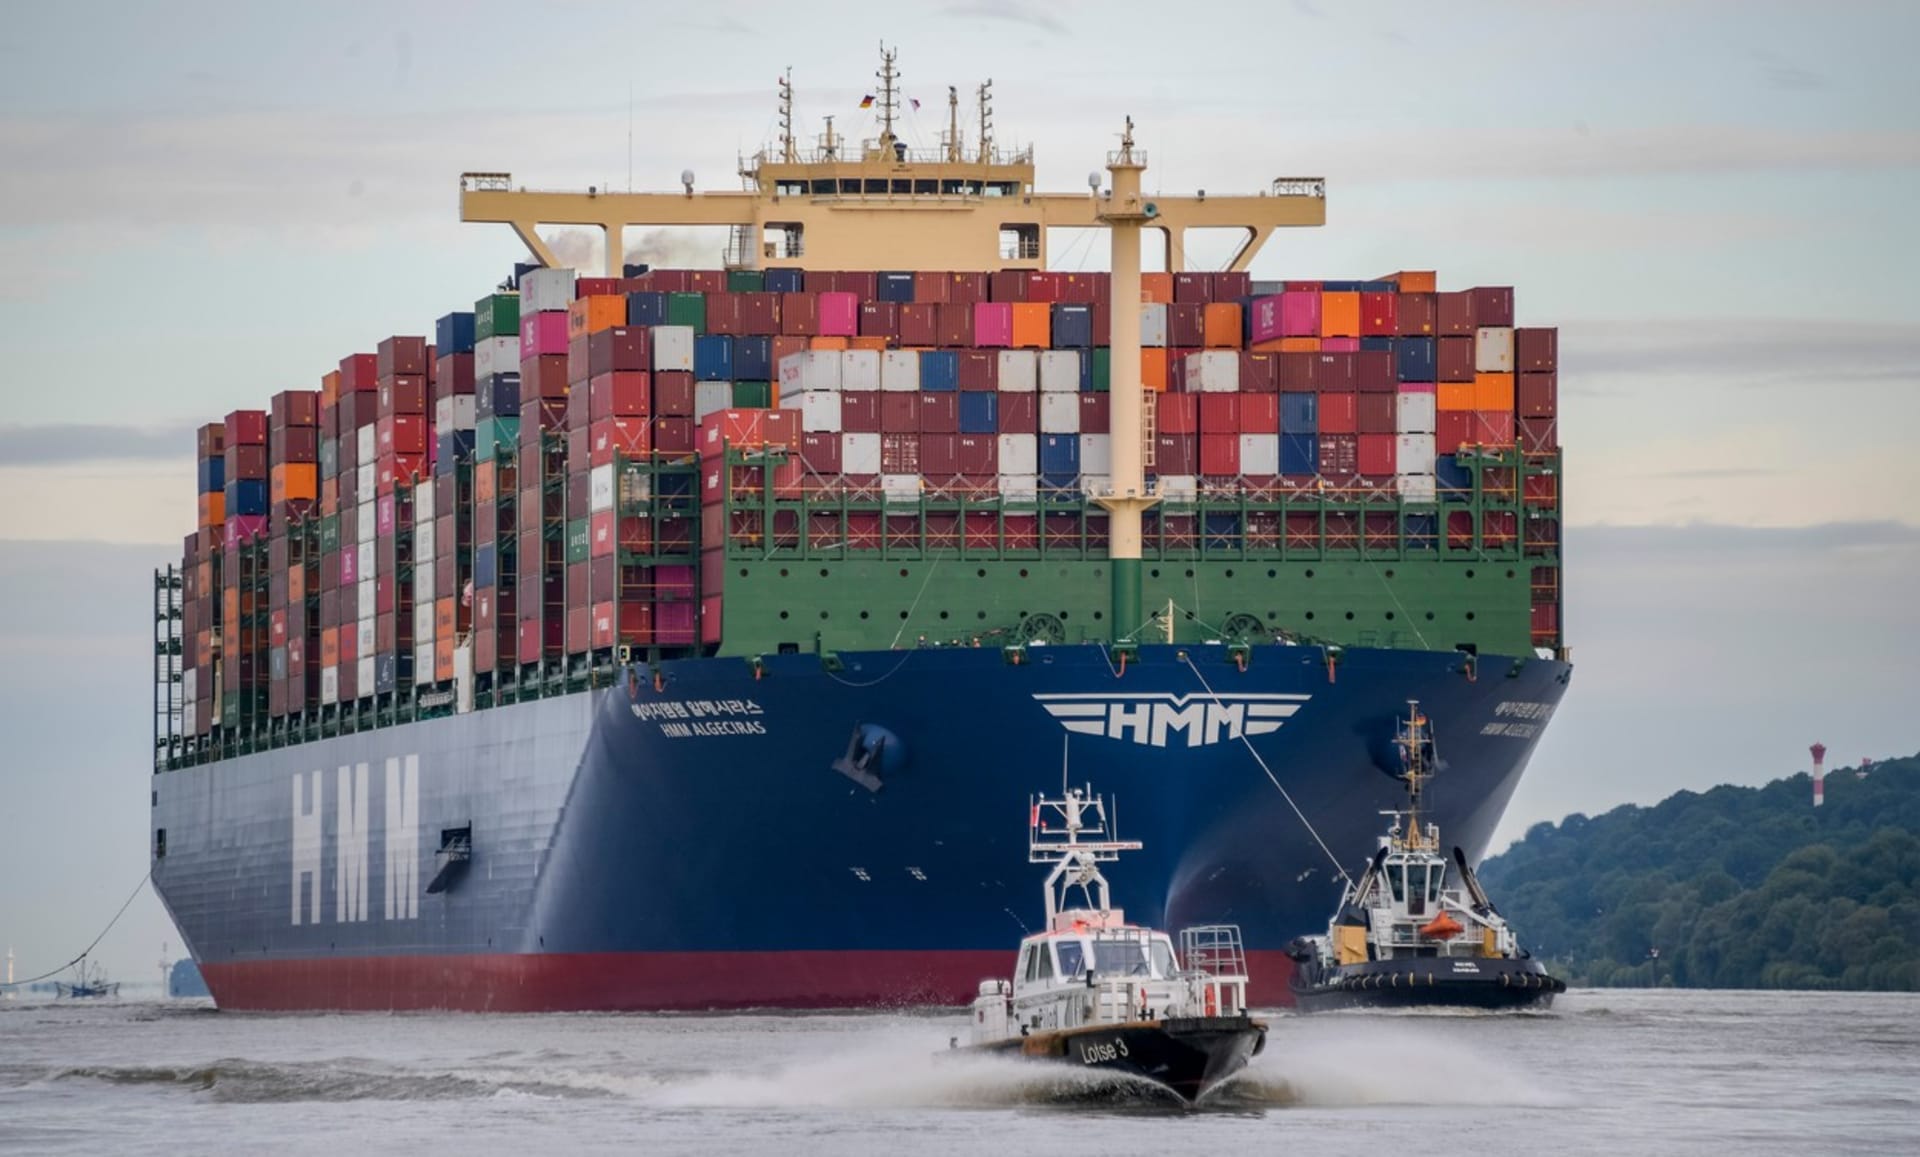 Námořní kontejnerová doprava vázne kvůli tomu, že se prázdné kontejnery hromadí v Evropě a Severní Americe.